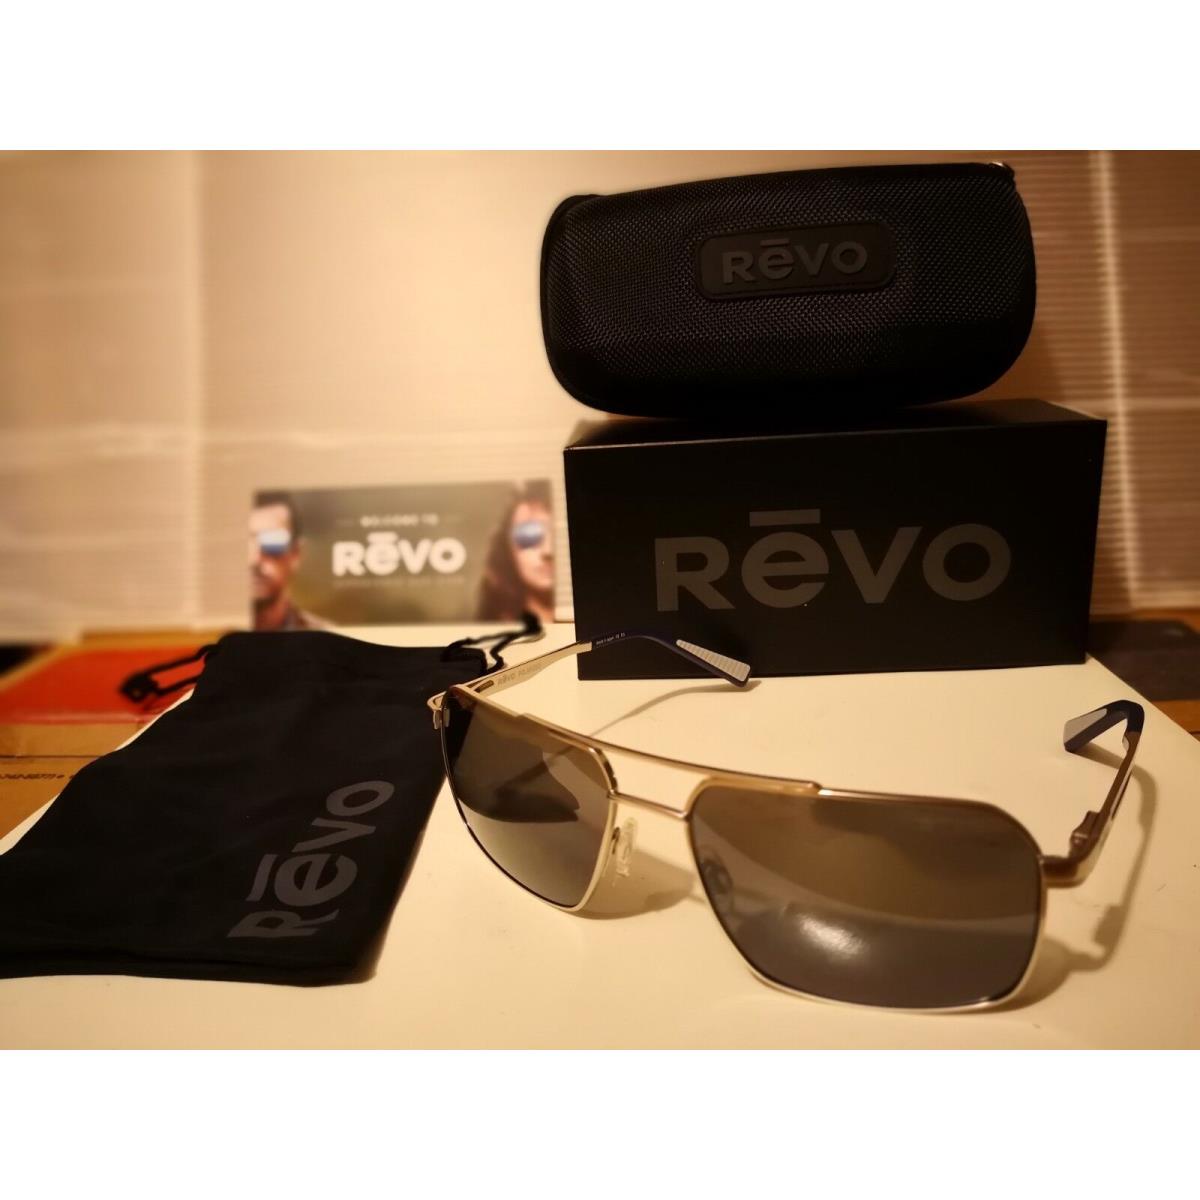 Revo sunglasses  - Chrome Frame, Graphite Polarized Lens